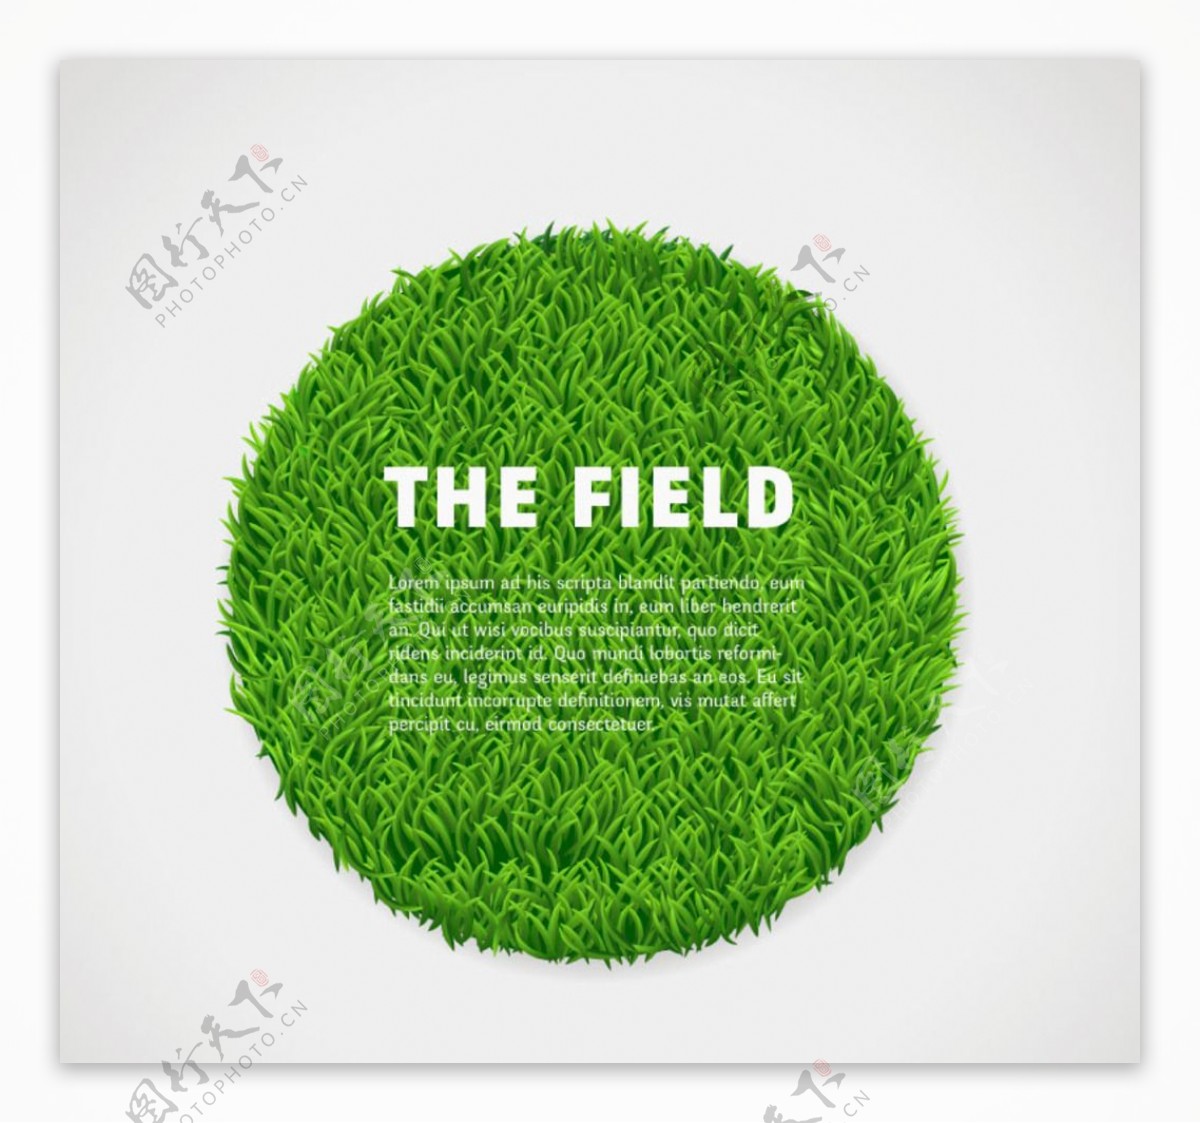 圆形绿色草坪